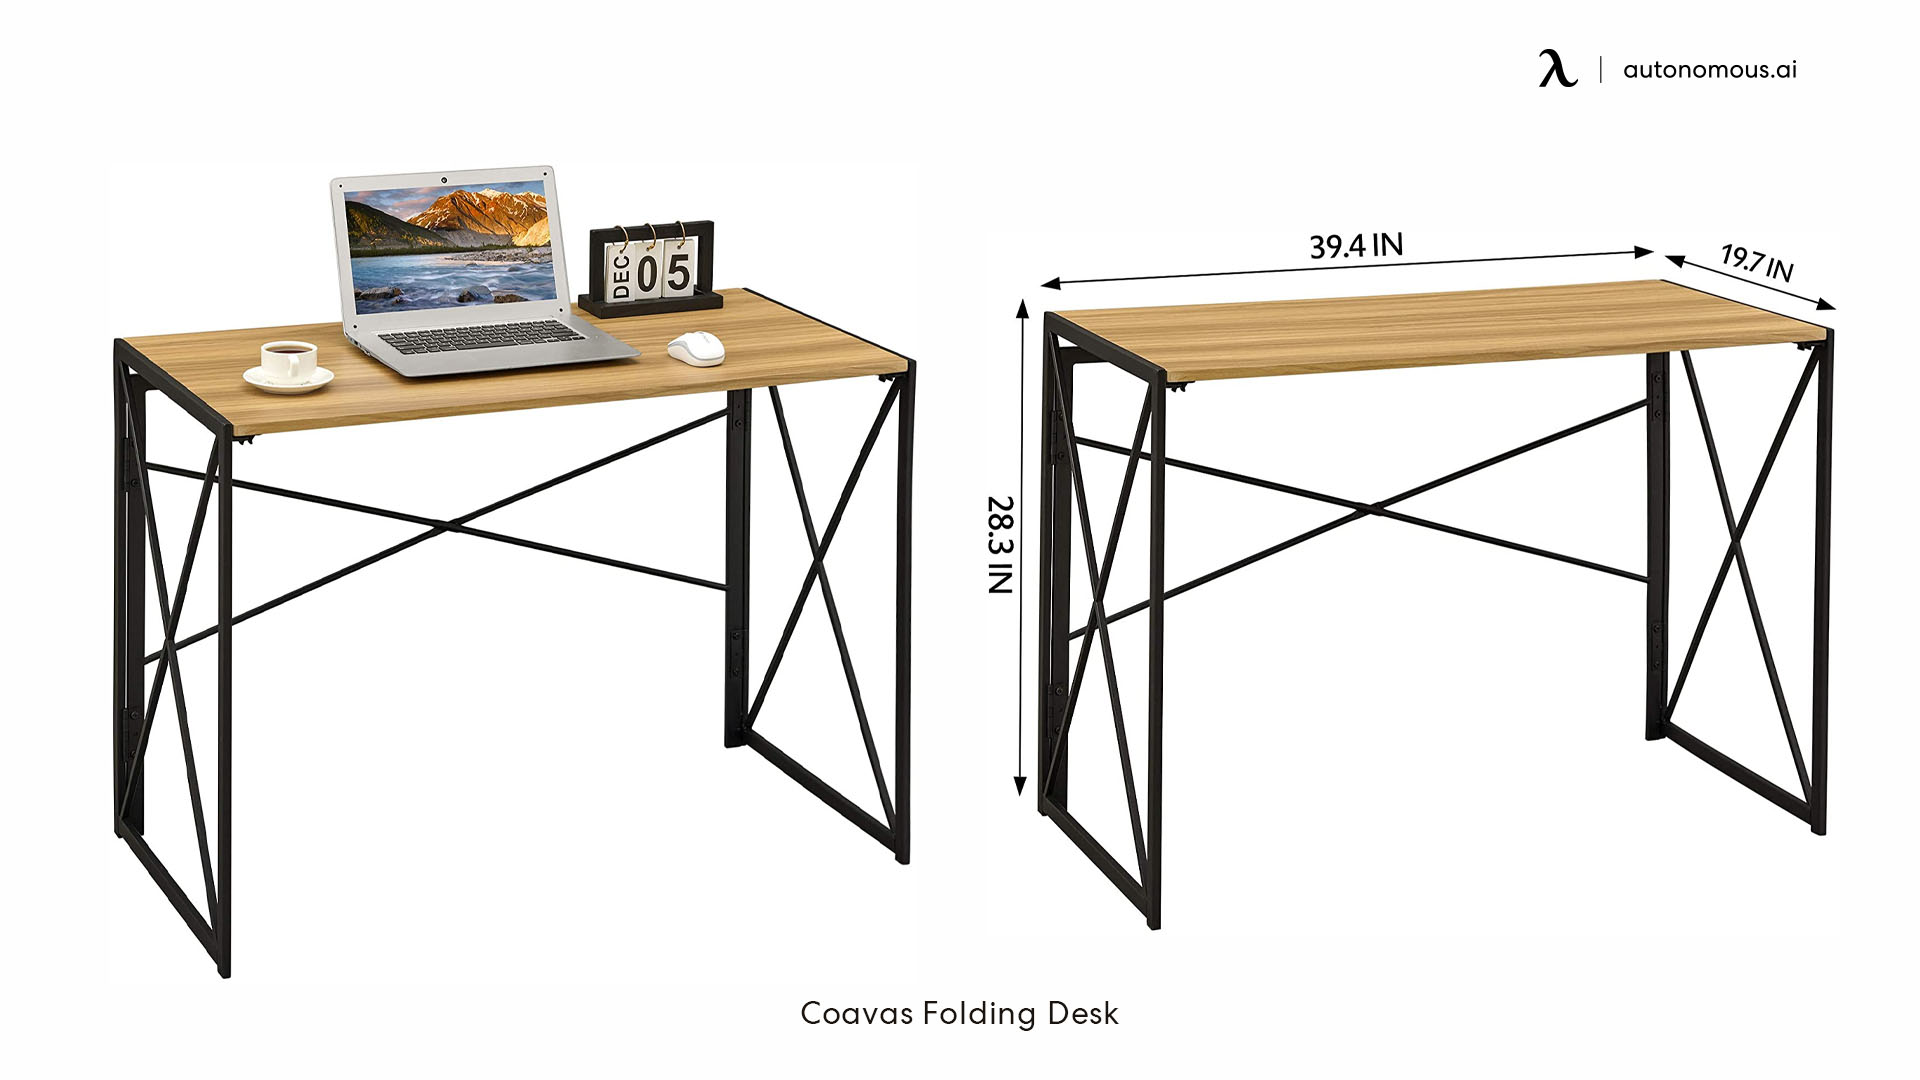 Coavas Folding Desk